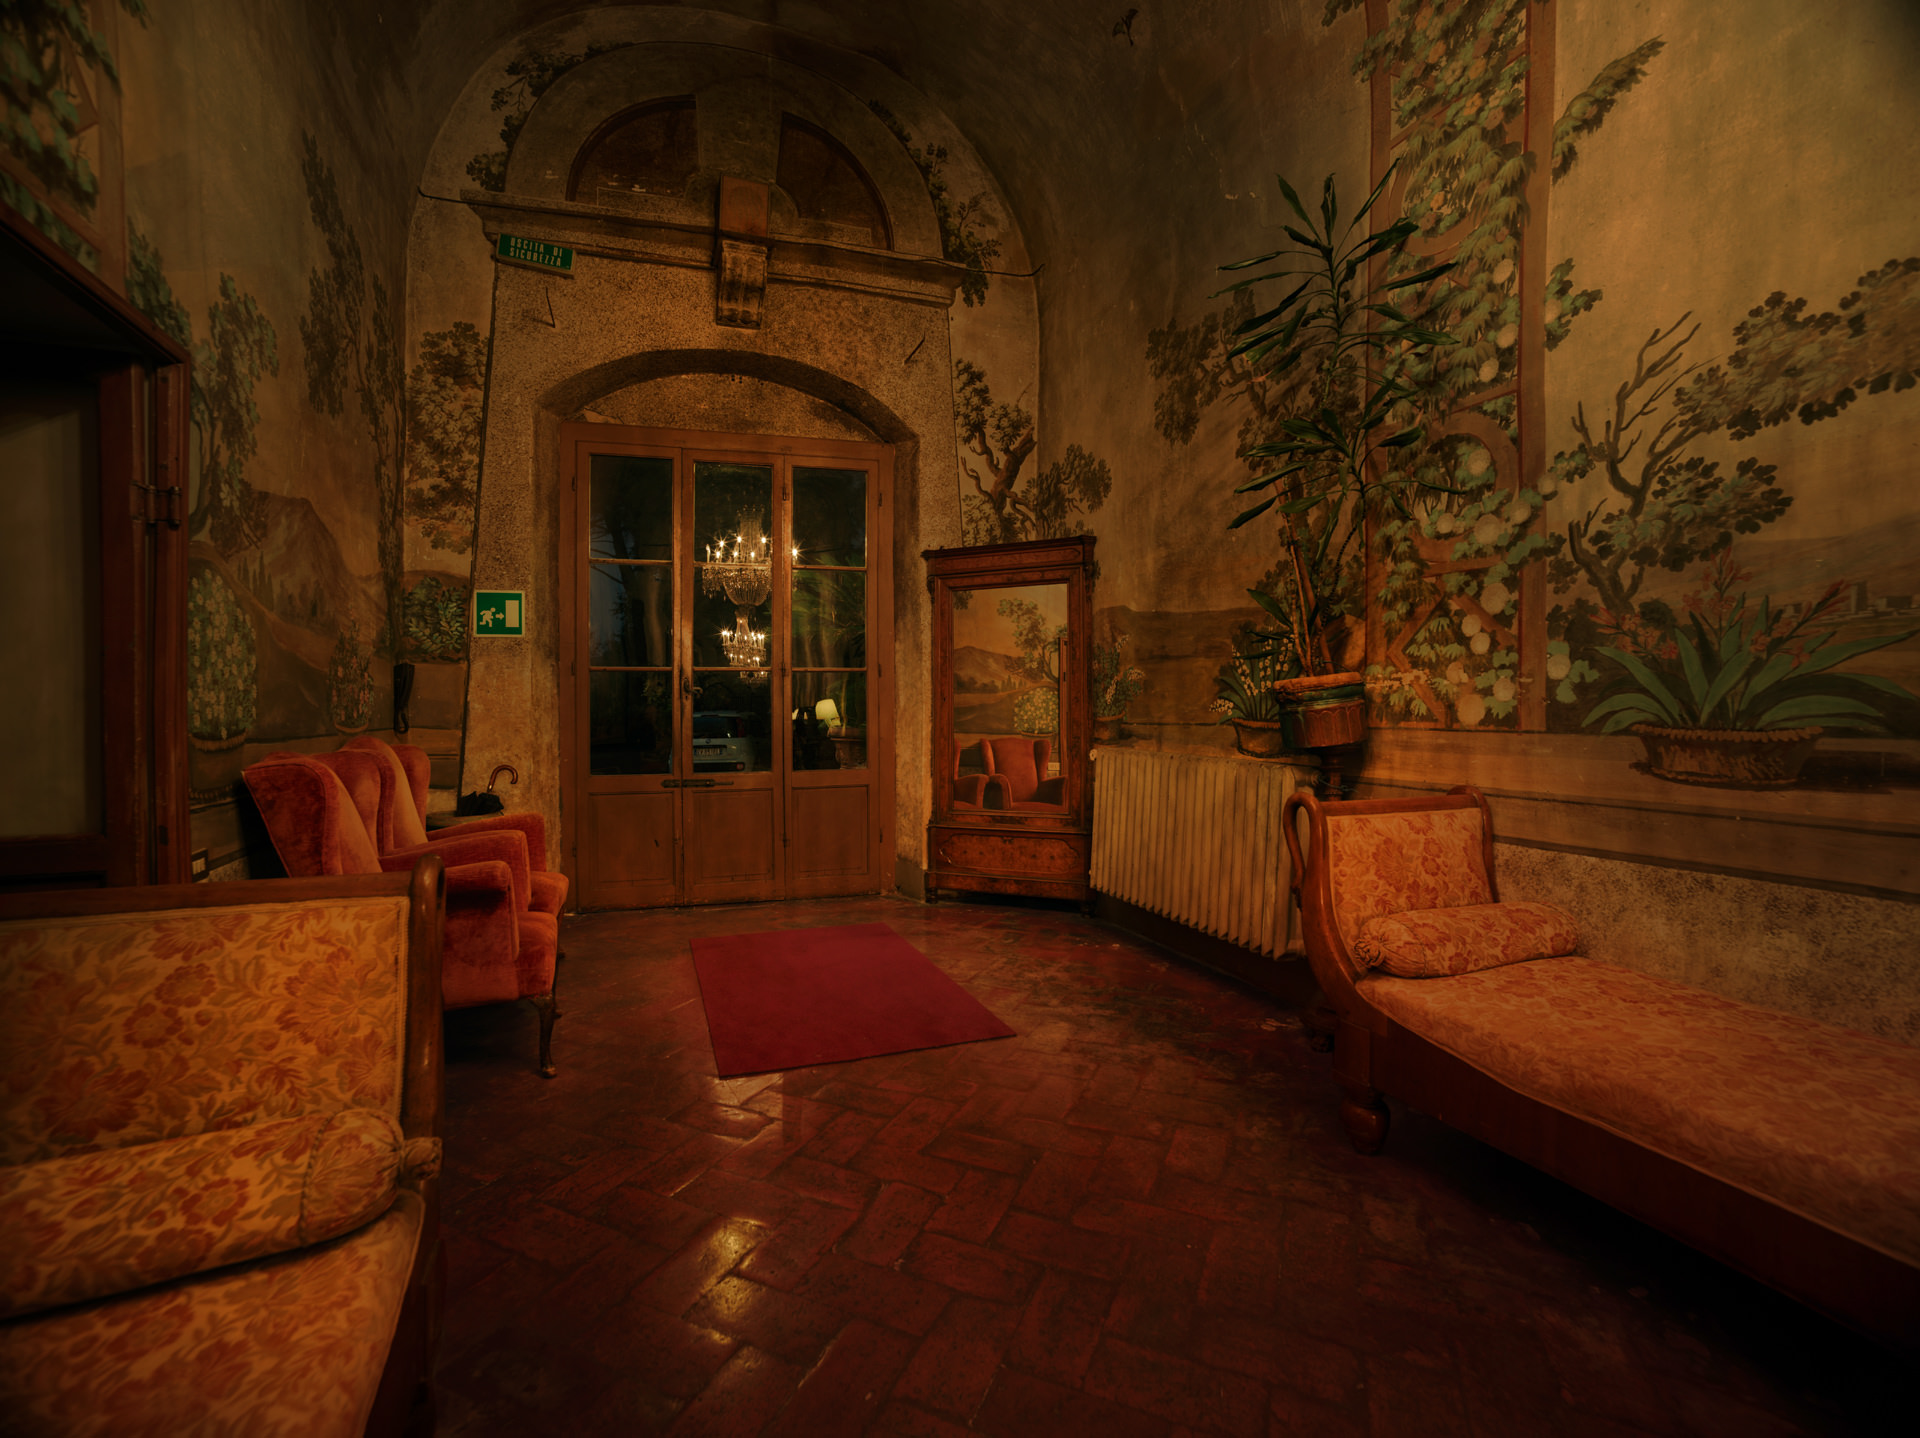 ©ankeluckmann1339, Villa Villoresi Hotel, Architecture, Interior, Italy, anke luckmann, interior